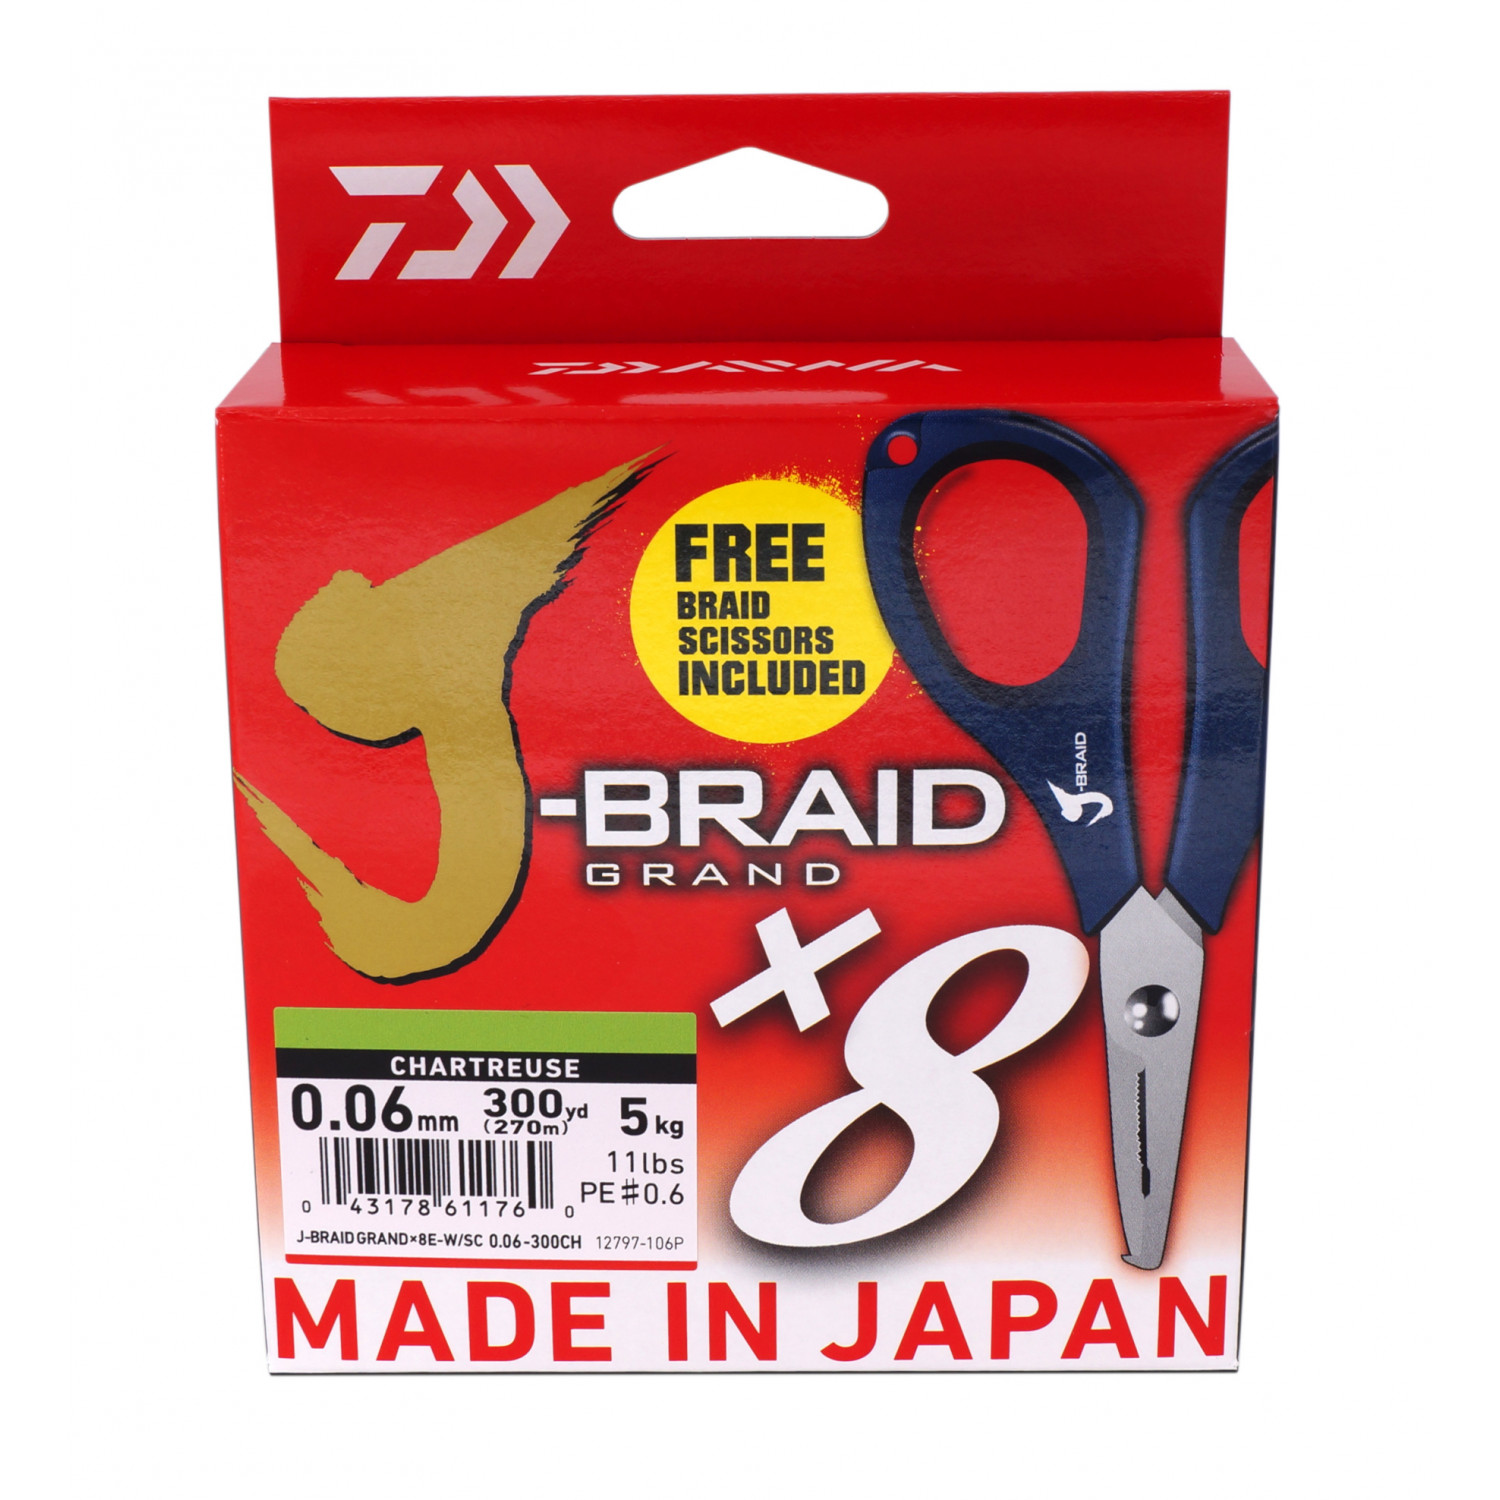 DAIWA J Braid Grand X8 Braided Fishing Line Promo Edition chartreuse 135  12797 006P 00